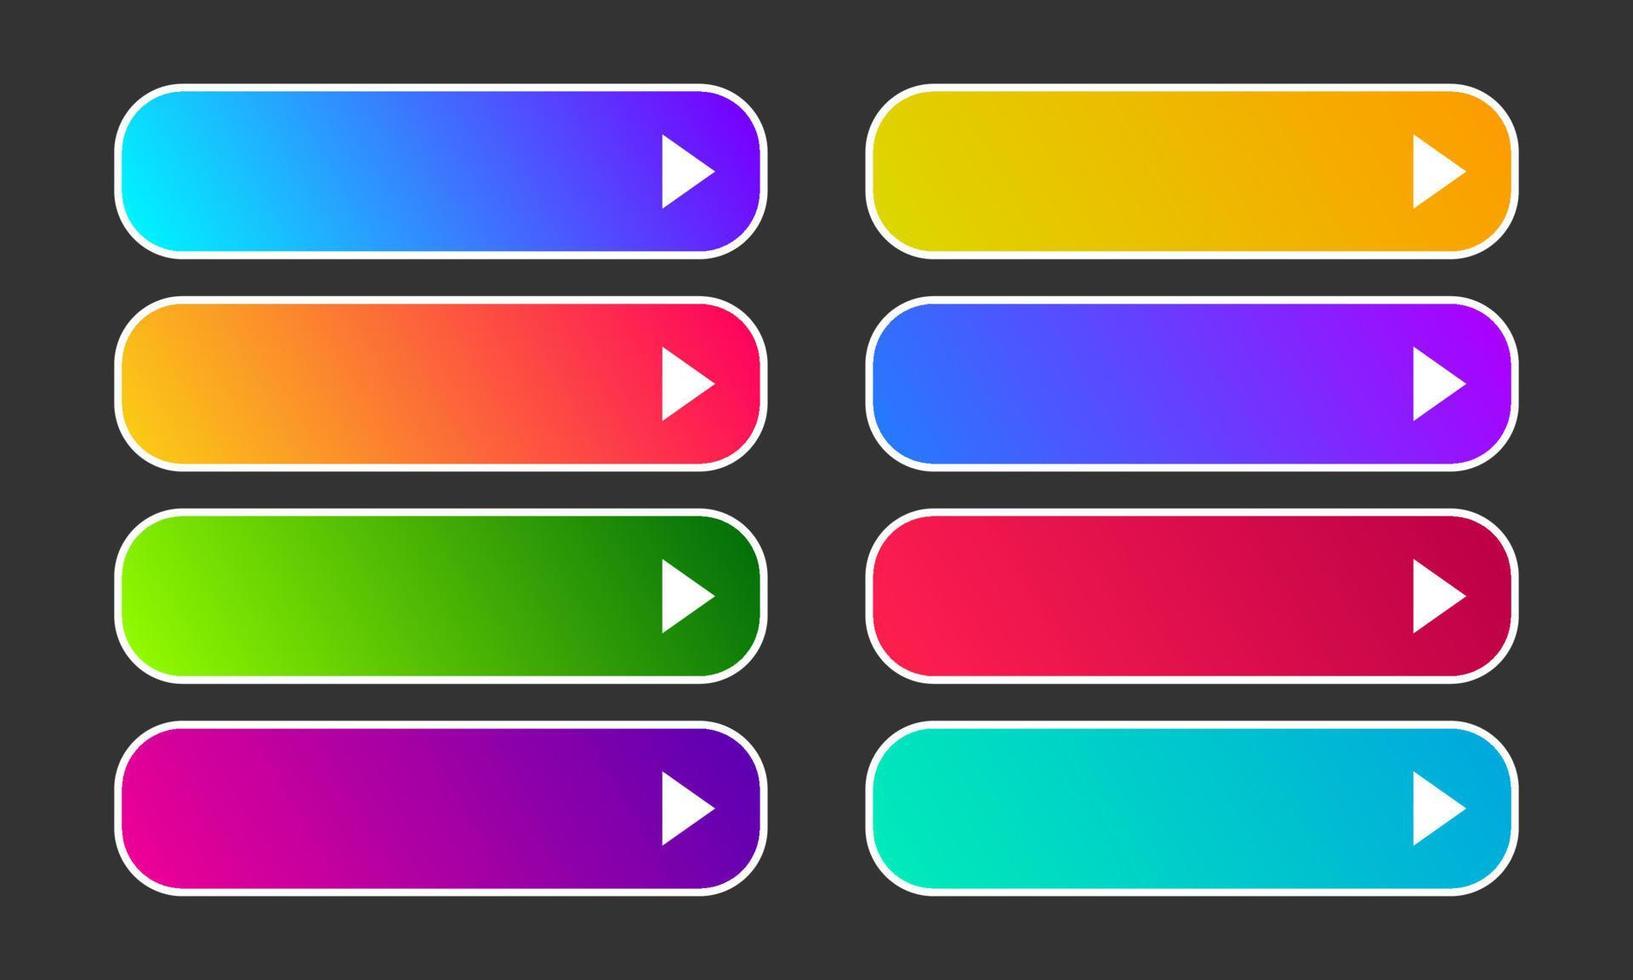 kleurrijk helling toetsen met pijlen. reeks van acht modern abstract web toetsen. vector illustratie